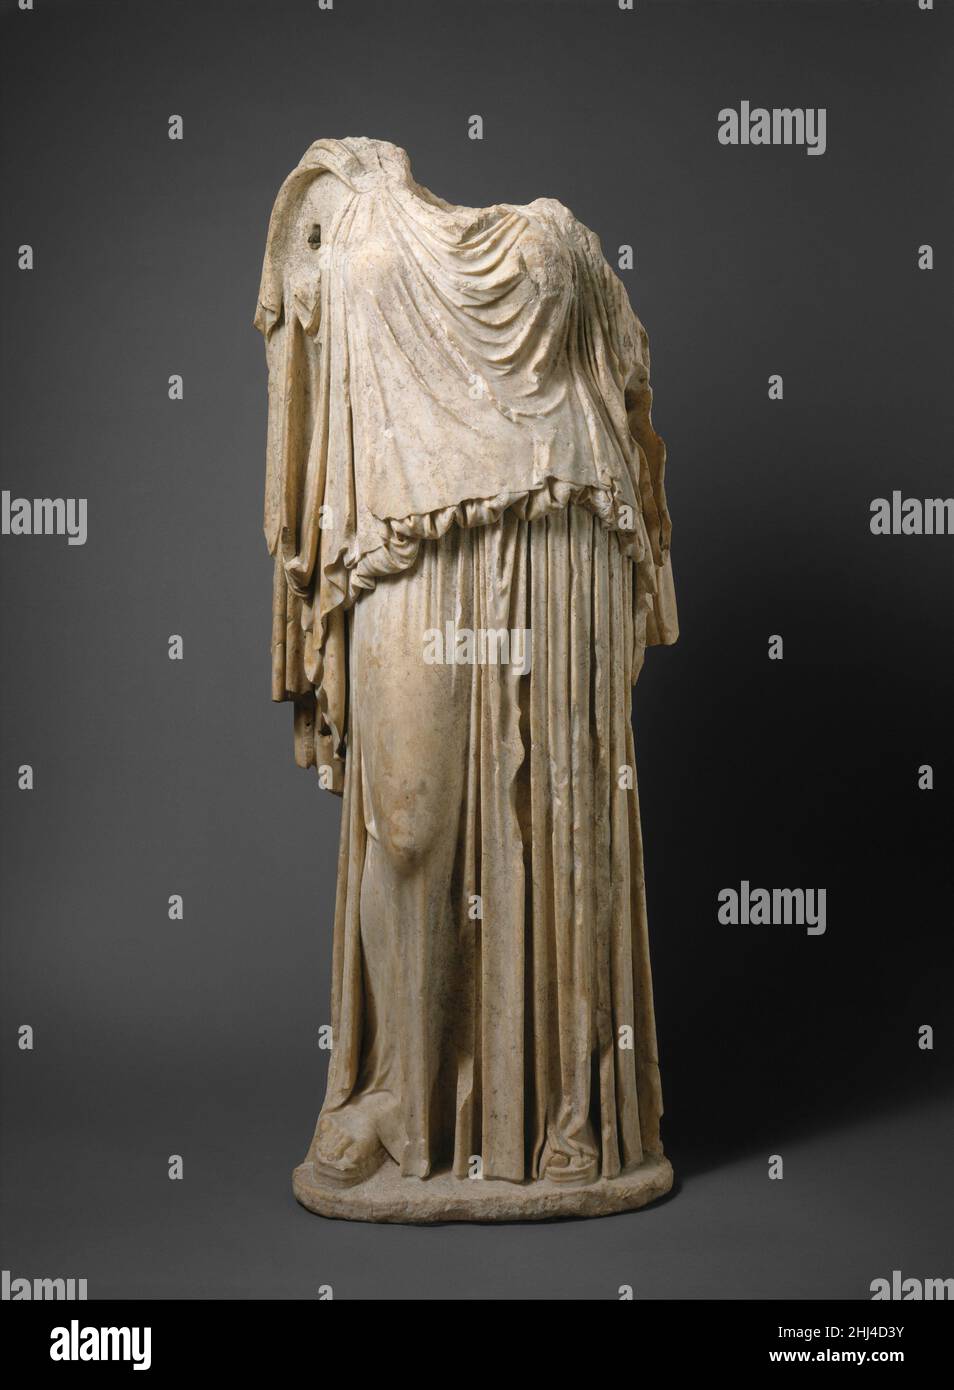 Estatua de mármol de Eirene (la personificación de la paz) ca. 14–68 A.D. Copia romana del original griego de Kephisodotos Copia de una estatua de bronce griega de 375/374–360/359 A.C. por KephisodotosoEirene, la hija de Zeus y Themis, era uno de los tres Horai (Estaciones), maidens estrechamente asociados con la fertilidad de la tierra y el cuidado de los niños. El bronce original fue erigido en el Agora (mercado) de Atenas entre 375/374 y 360/359 a.C. Rara vez puede un monumento antiguo ser fechado tan exactamente. Sabemos por fuentes literarias que el culto de Eirene fue introducido a Atenas en 375/374, AN Foto de stock